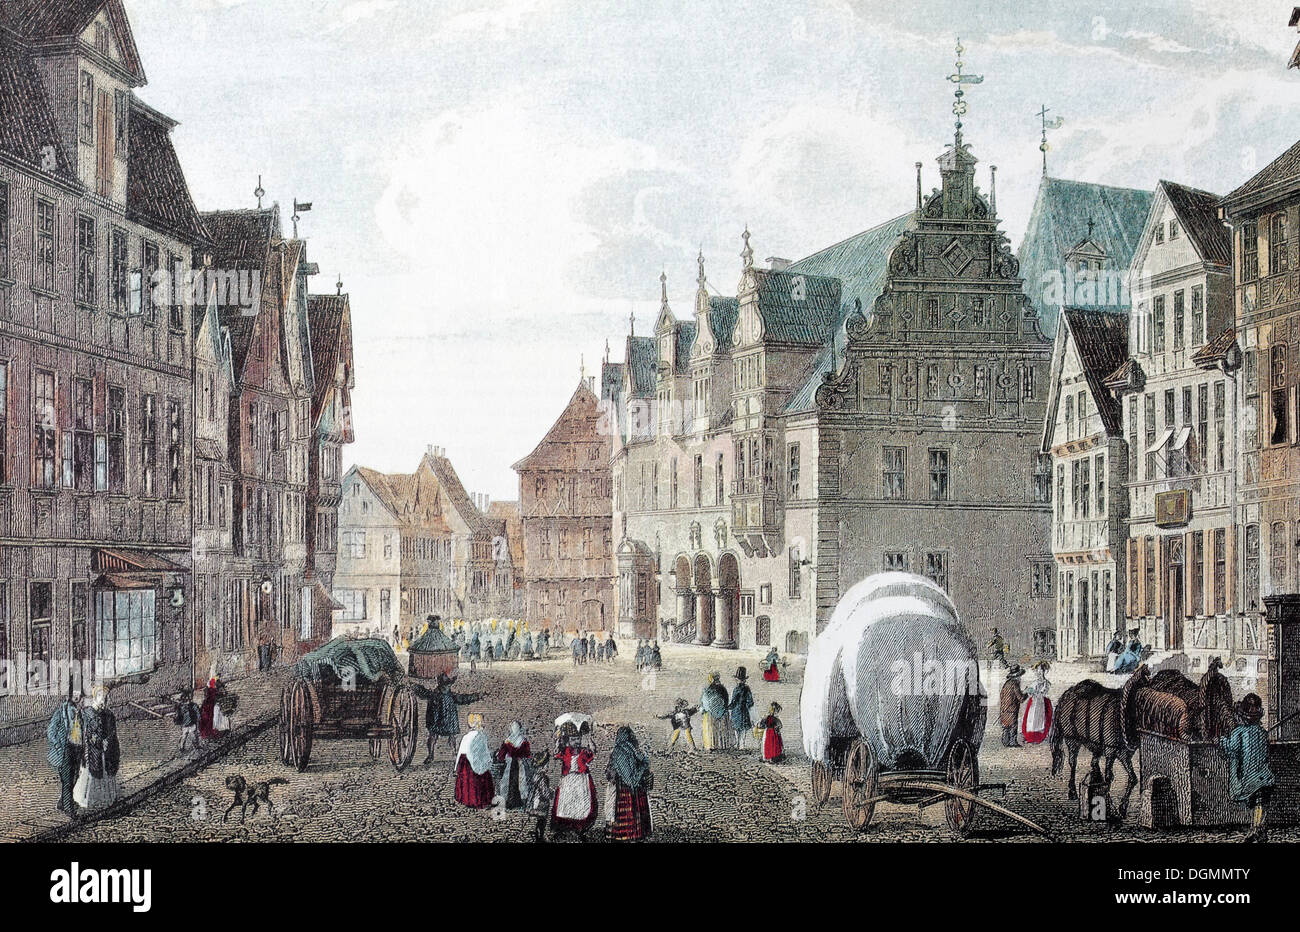 Celle im Jahre 1845, Marktplatz und Rathaus, historische Stadtbild, Stahlstich aus dem 19. Jahrhundert, Niedersachsen Stockfoto